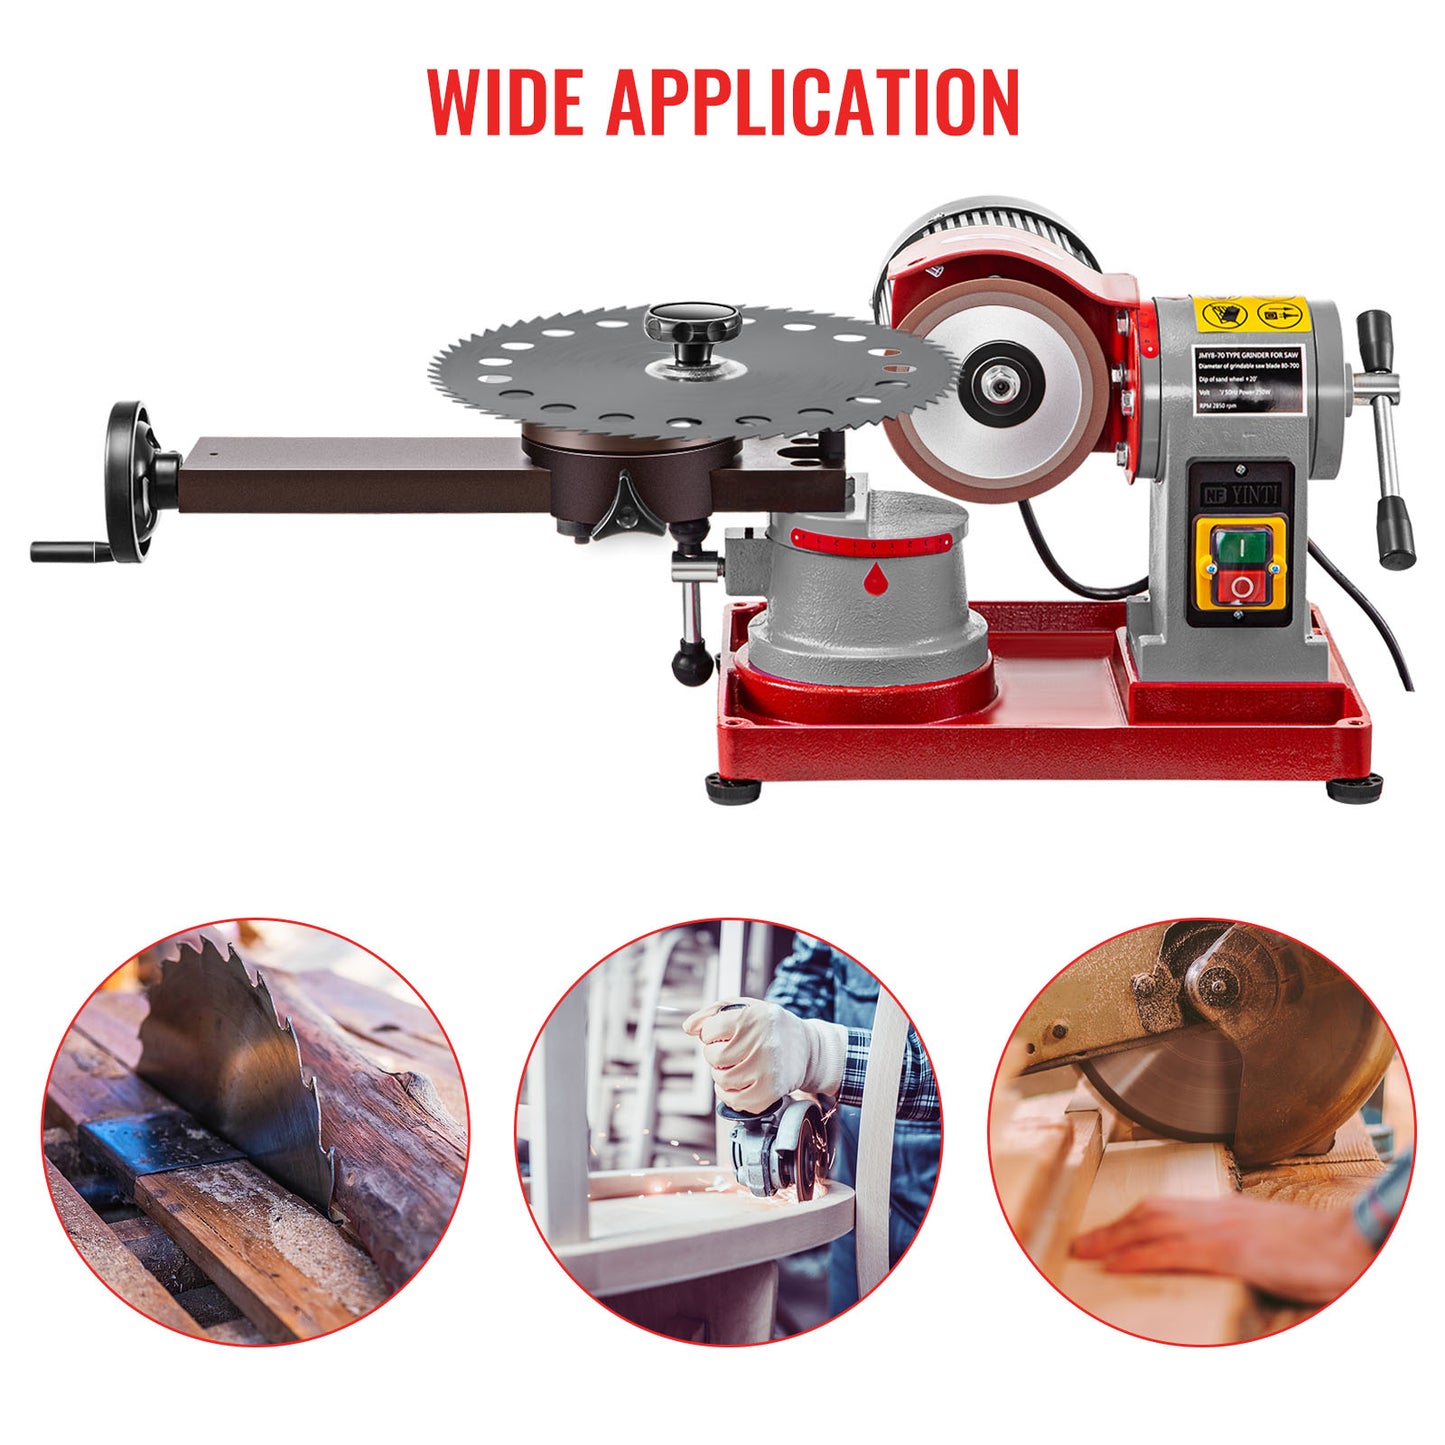 Circular saw blade sharpening machine, 370W, 2850 RPM, adjustable, red